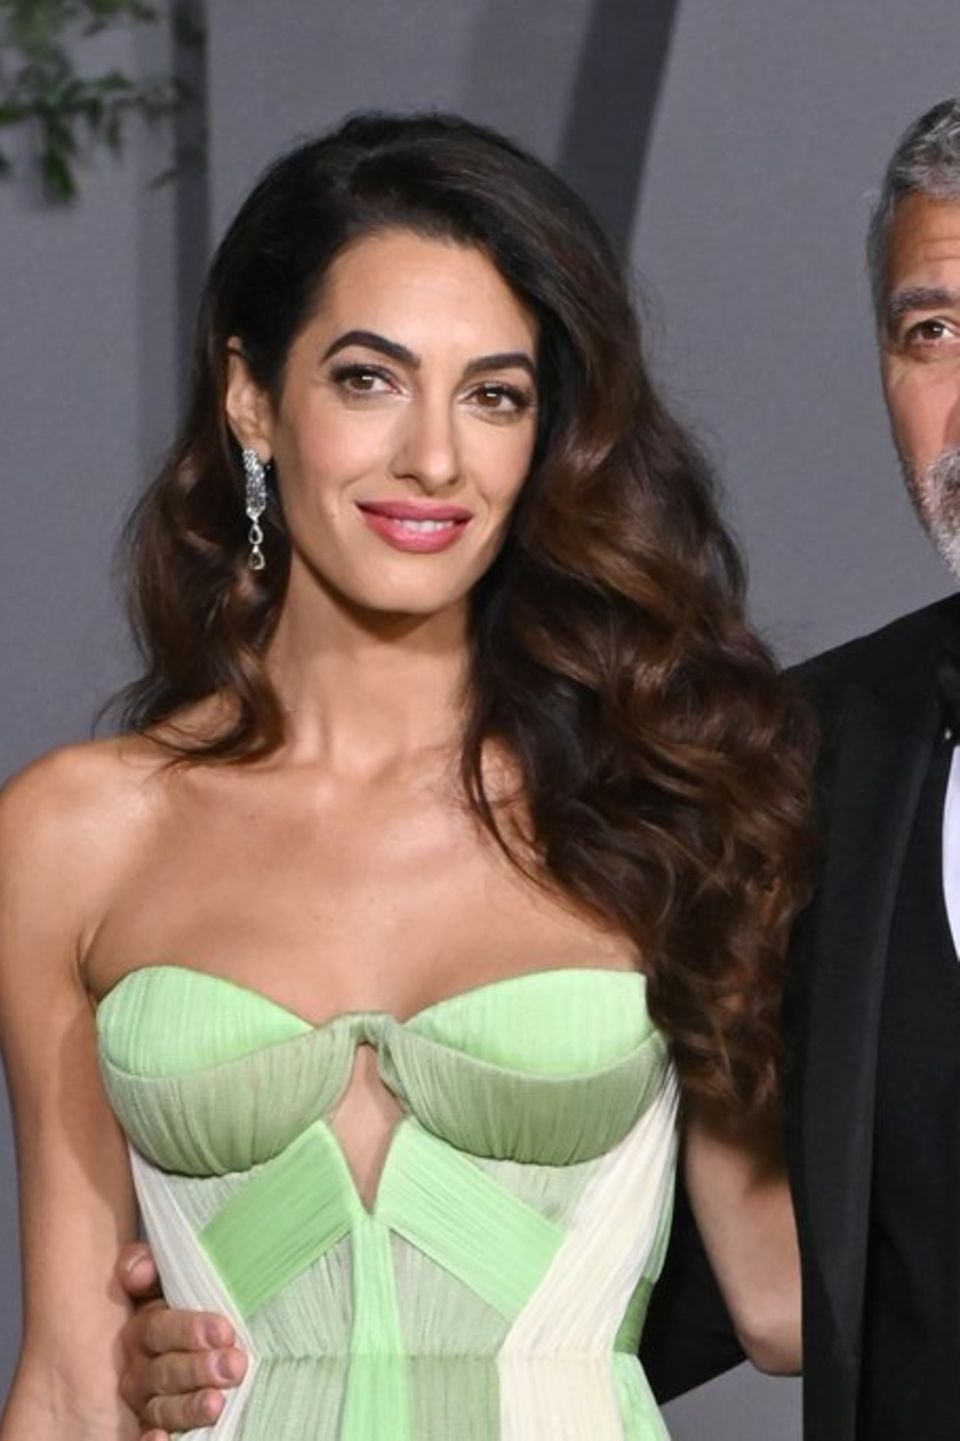 George Clooney und Ehefrau Amal sind seit 2014 verheiratet.